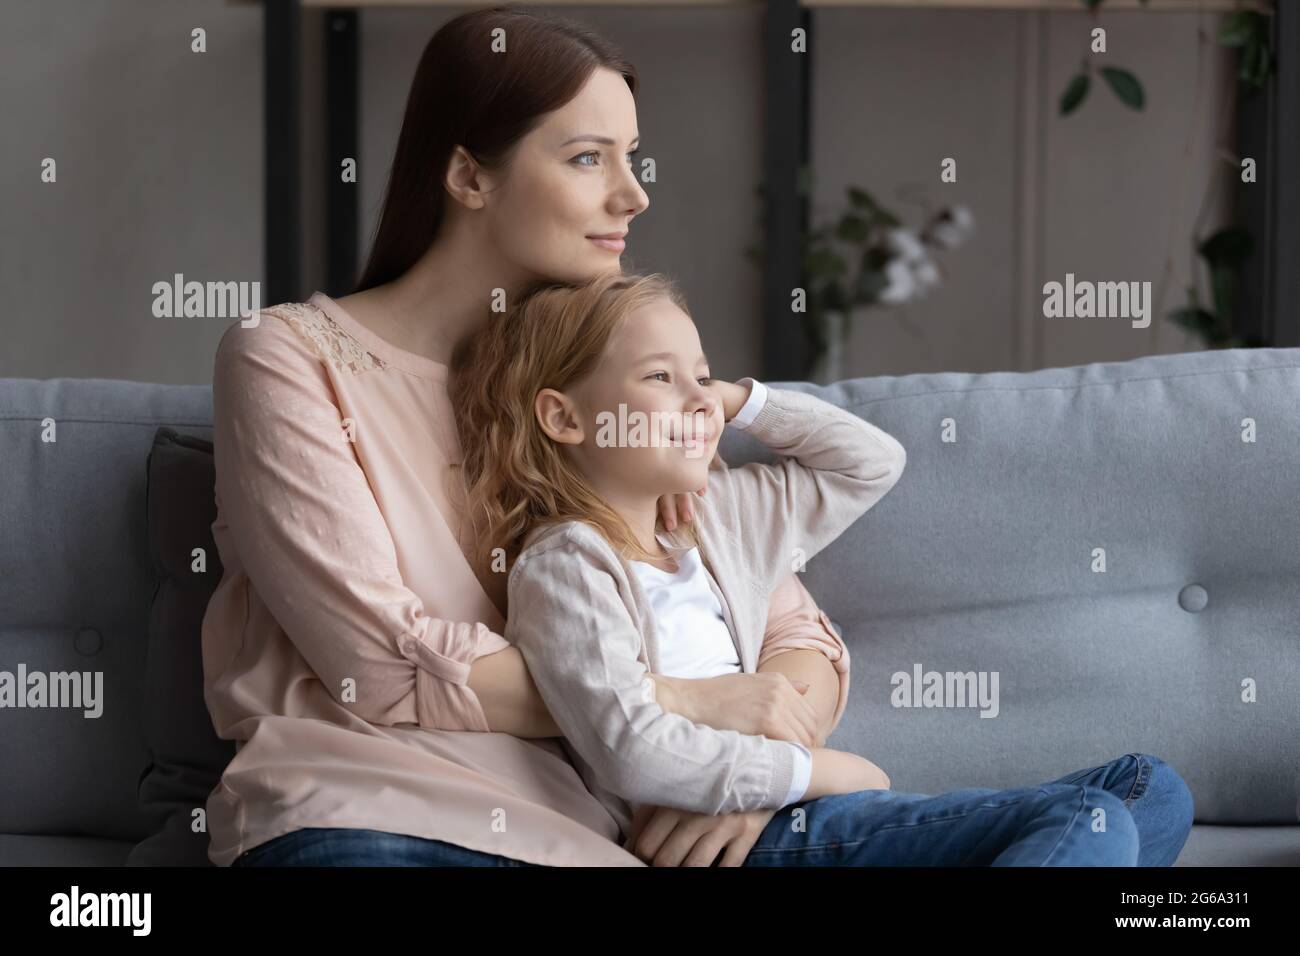 Une jeune fille aux cheveux rouges souriants se penche vers la mère sur le canapé Banque D'Images